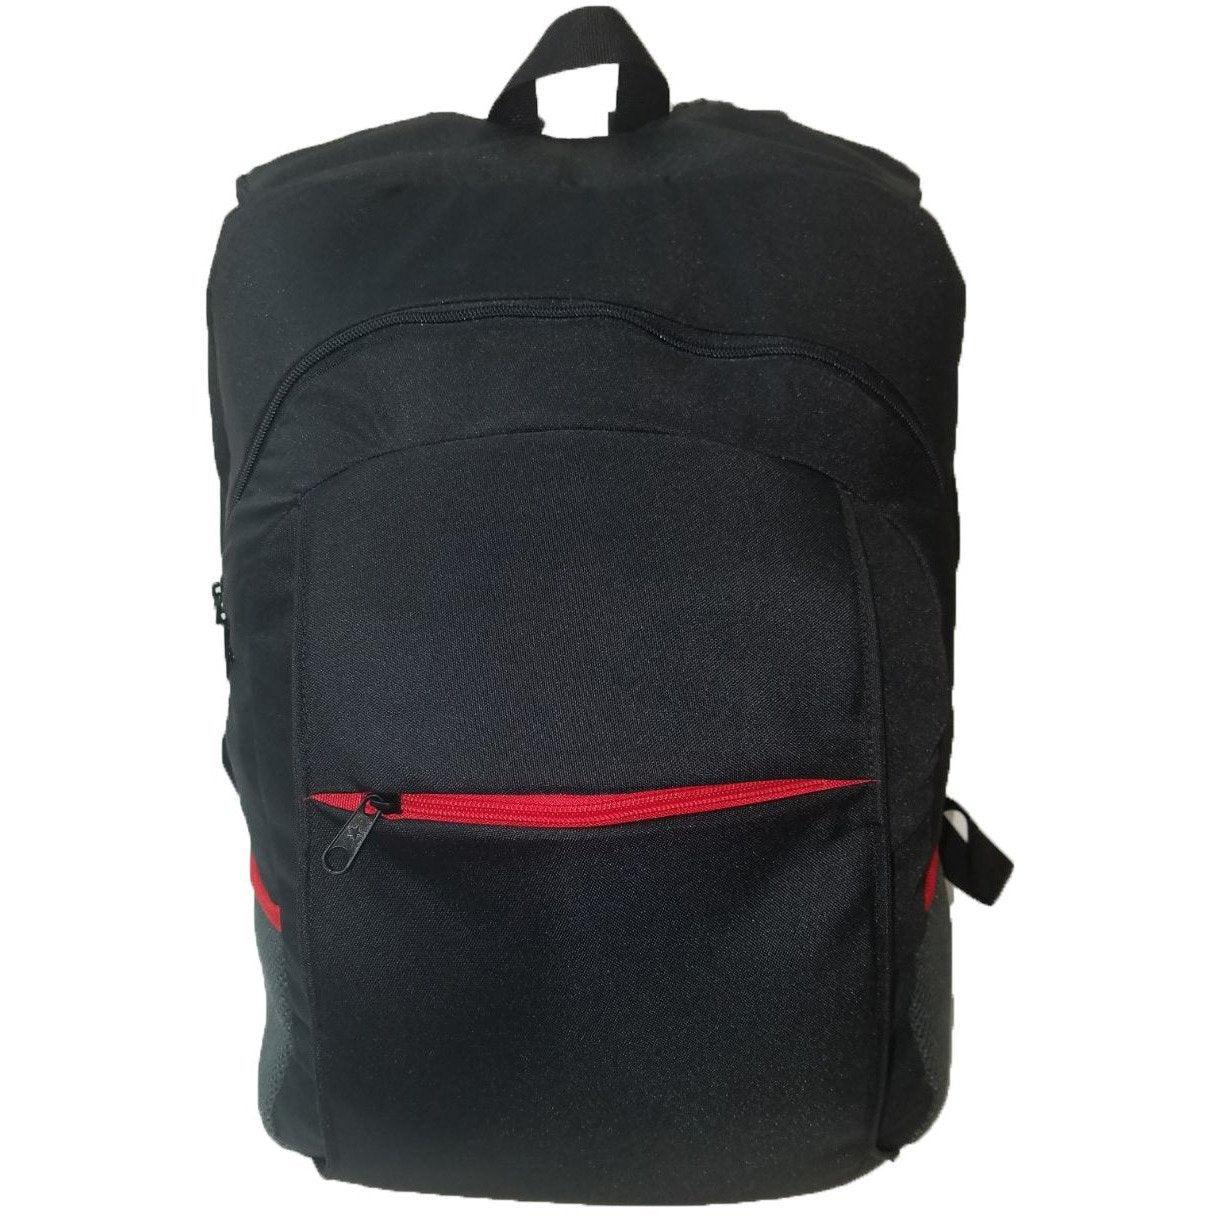 Masada Armor Backpack Vest - Vendor